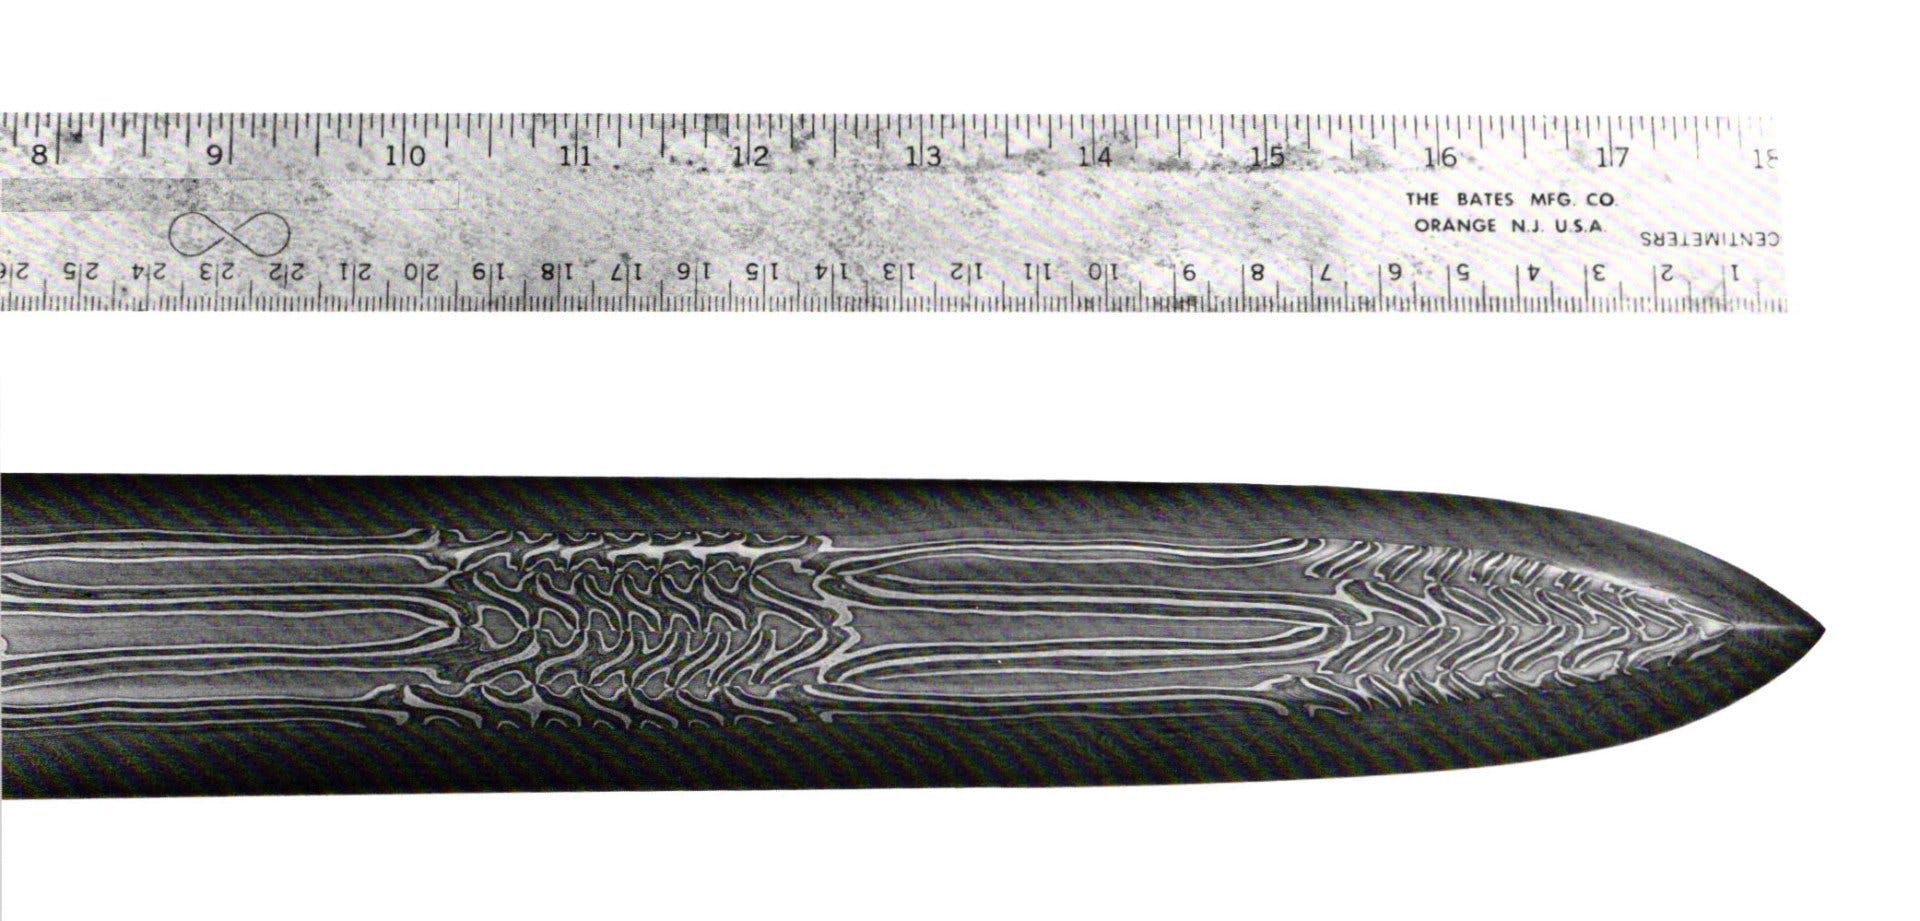 A Replica of the Sutton Hoo Sword